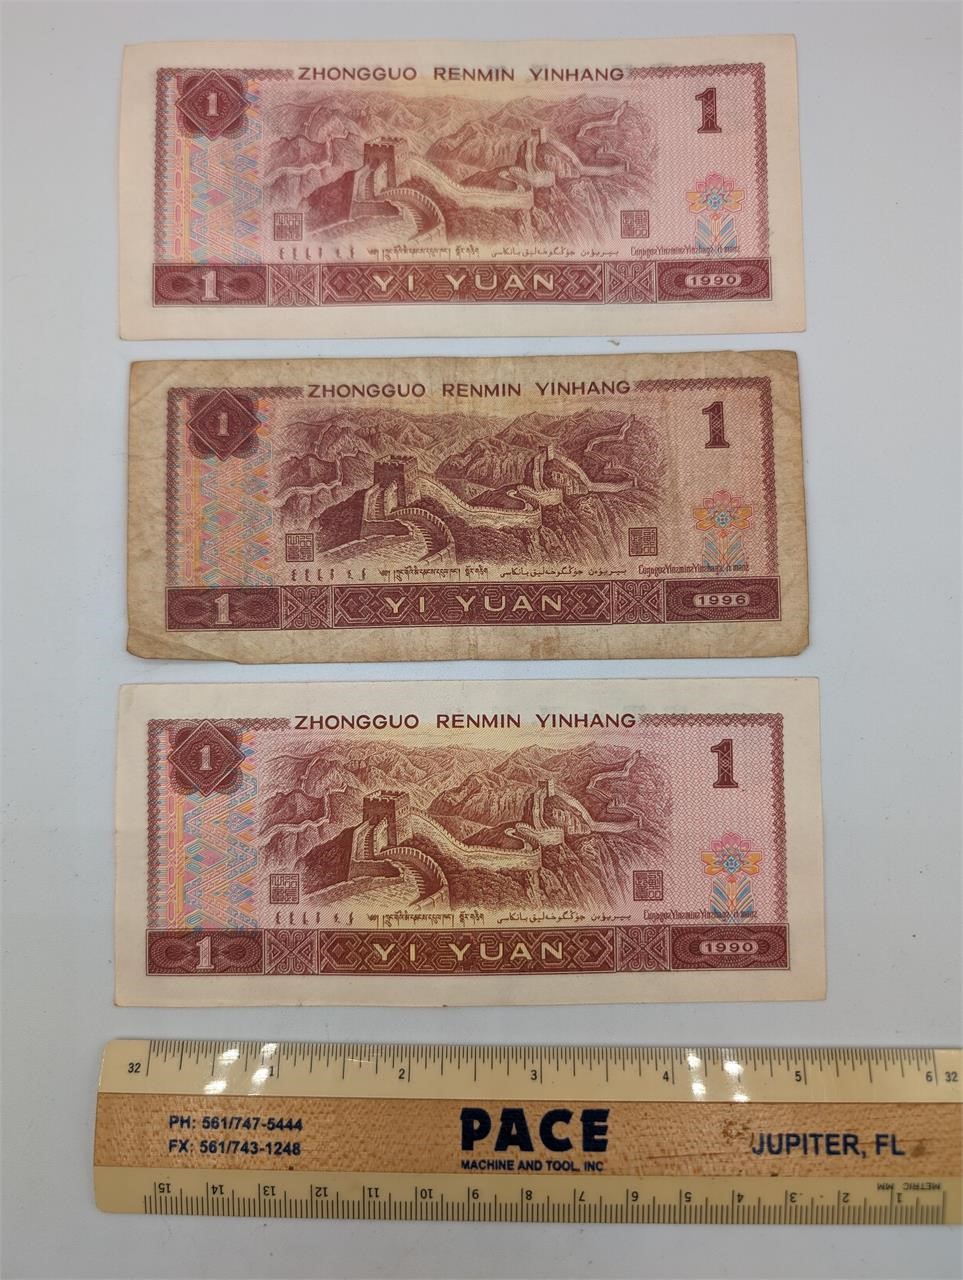 3 Pc. Chinese Zhongguo Renmin Yinhang One Yuan